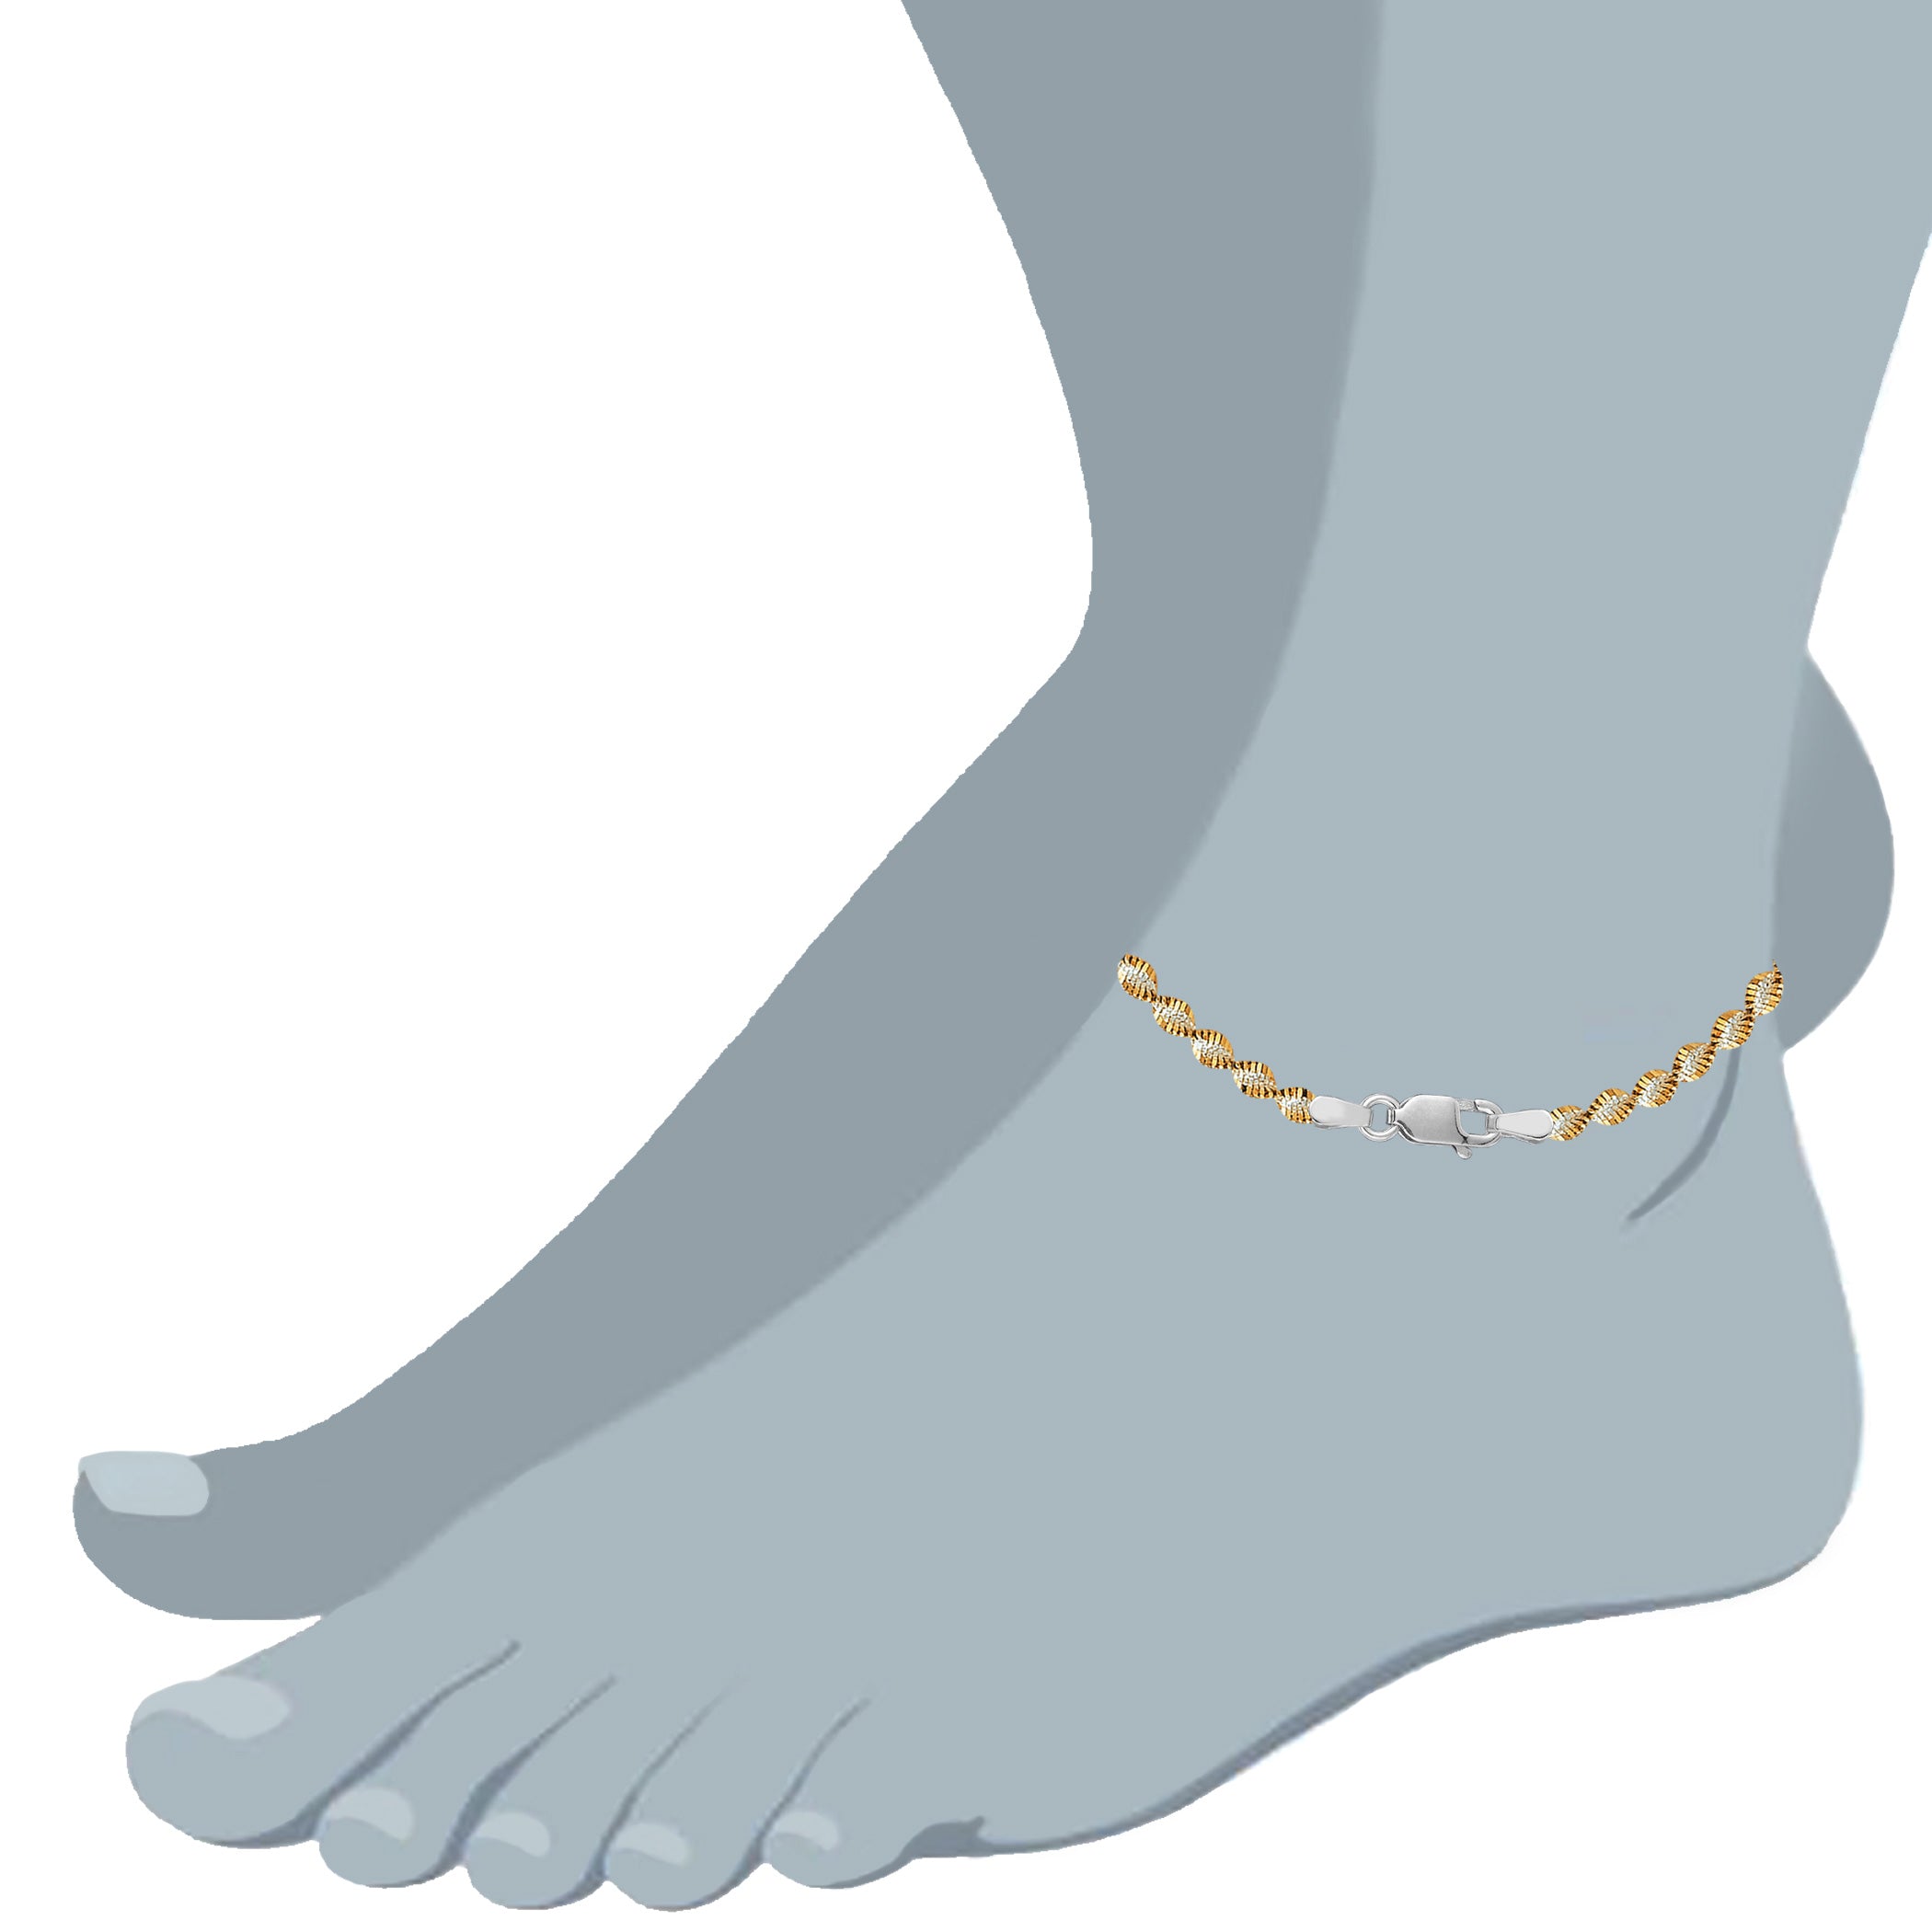 Hvid og gul Singapore Style Chain Anklet I Sterling Sølv fine designer smykker til mænd og kvinder